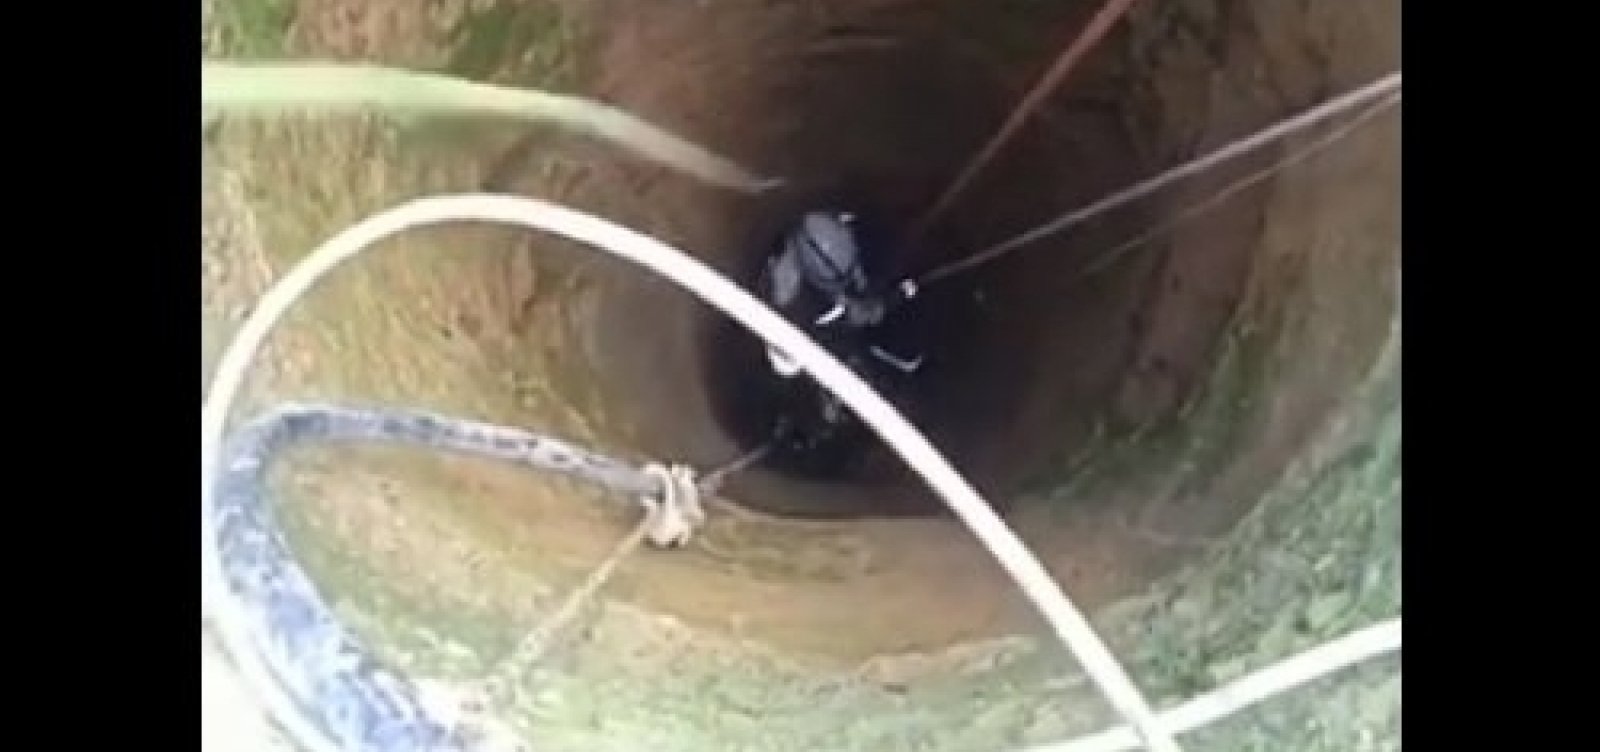 Samu resgata irmãos que ficaram presos em cisterna de 20 metros de profundidade